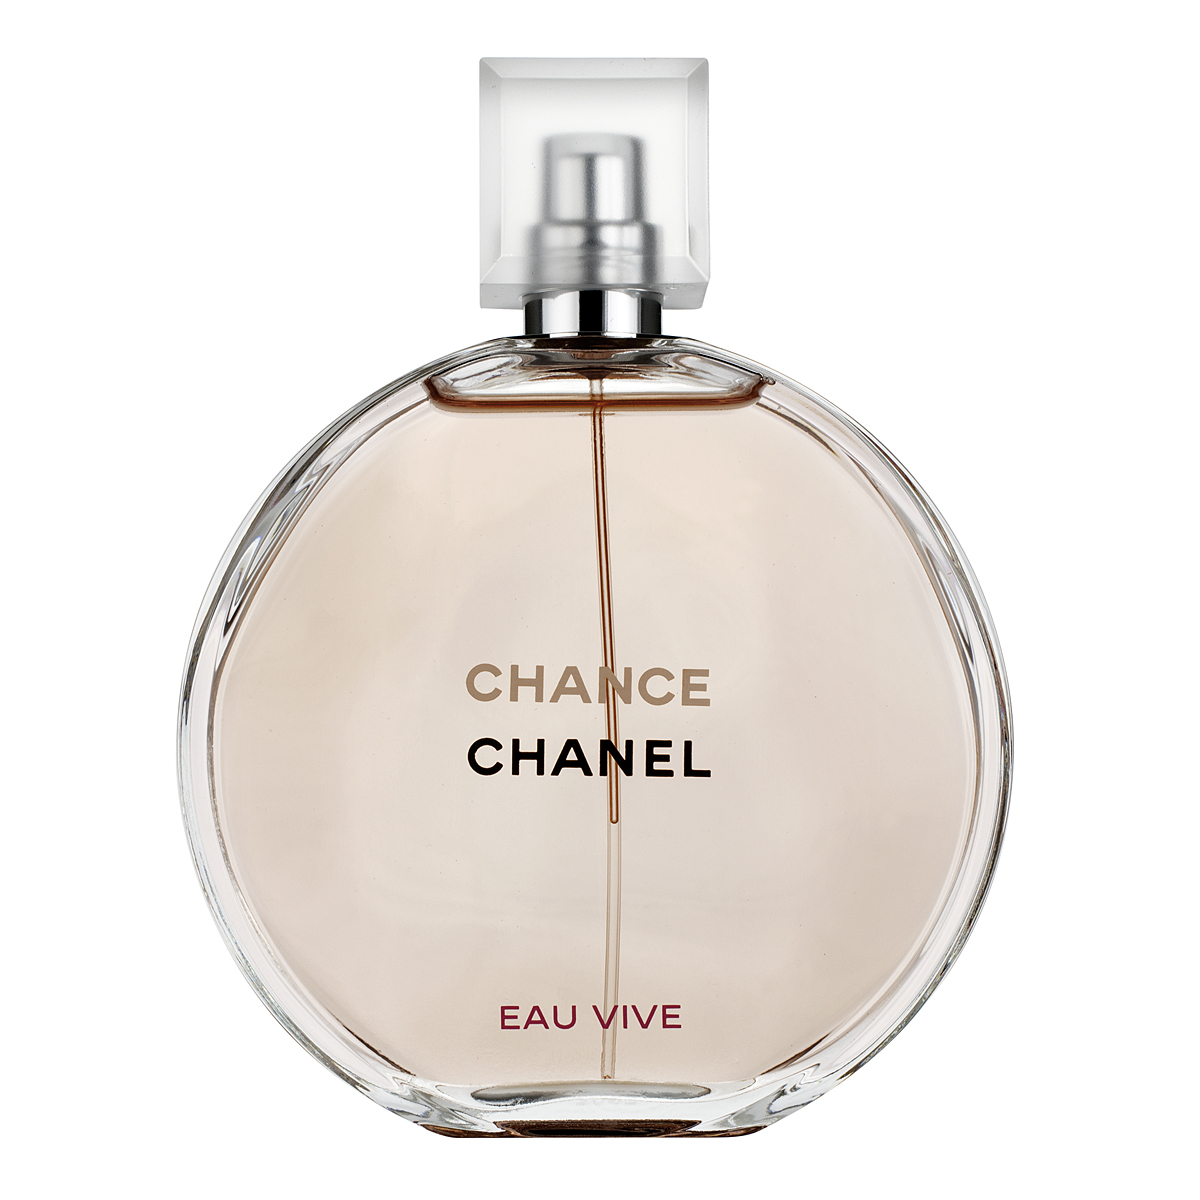 Chanel Chance Eau Vive Eau de Toilette Spray 150ml